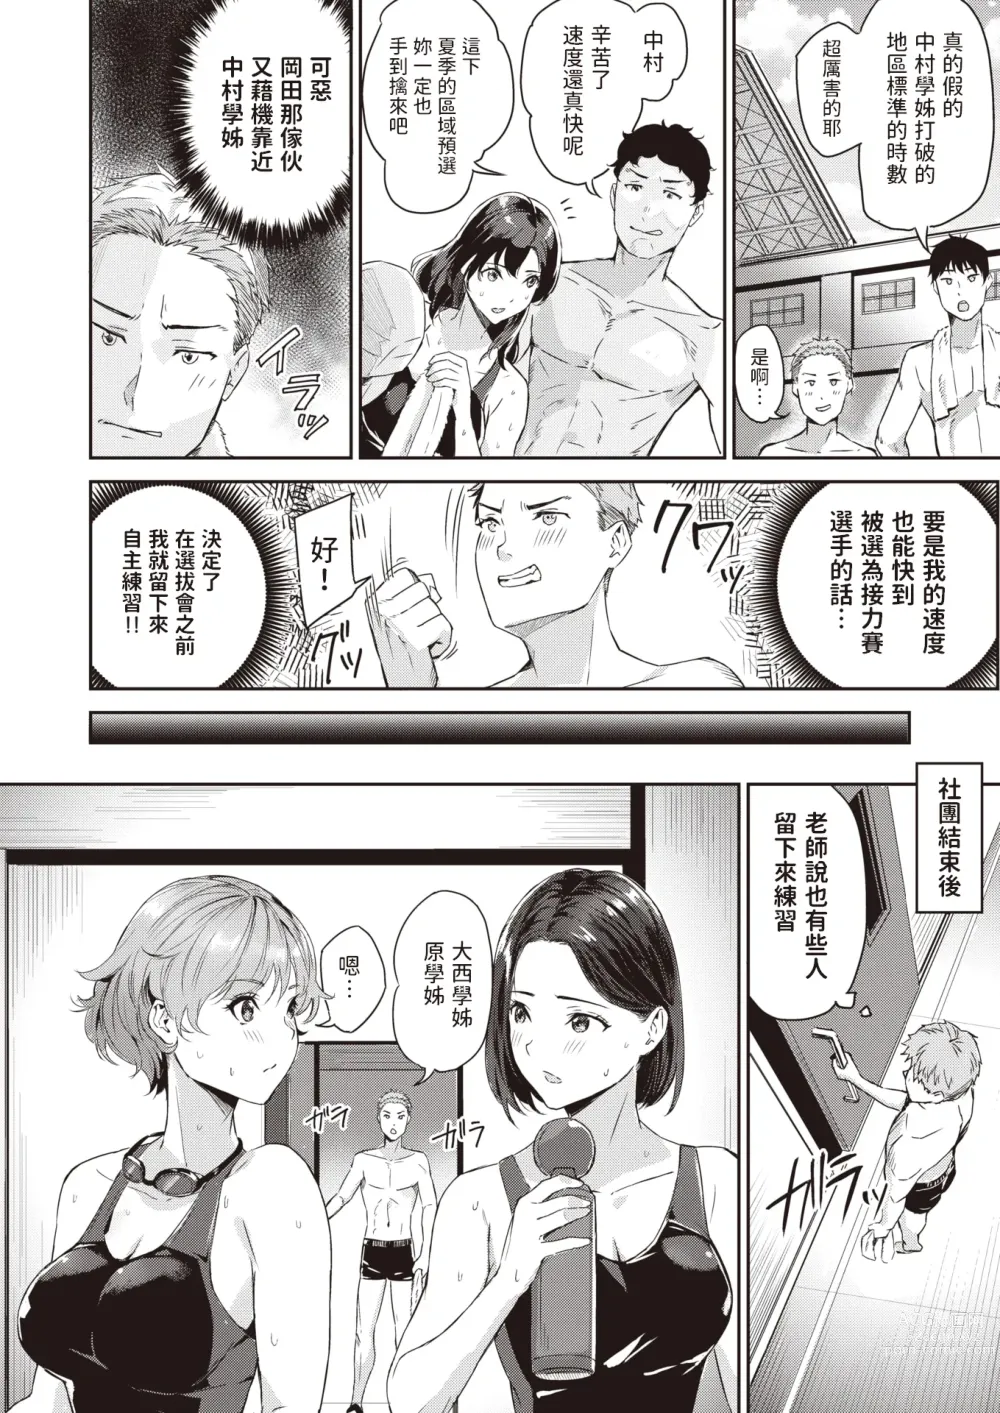 Page 2 of manga Splash!